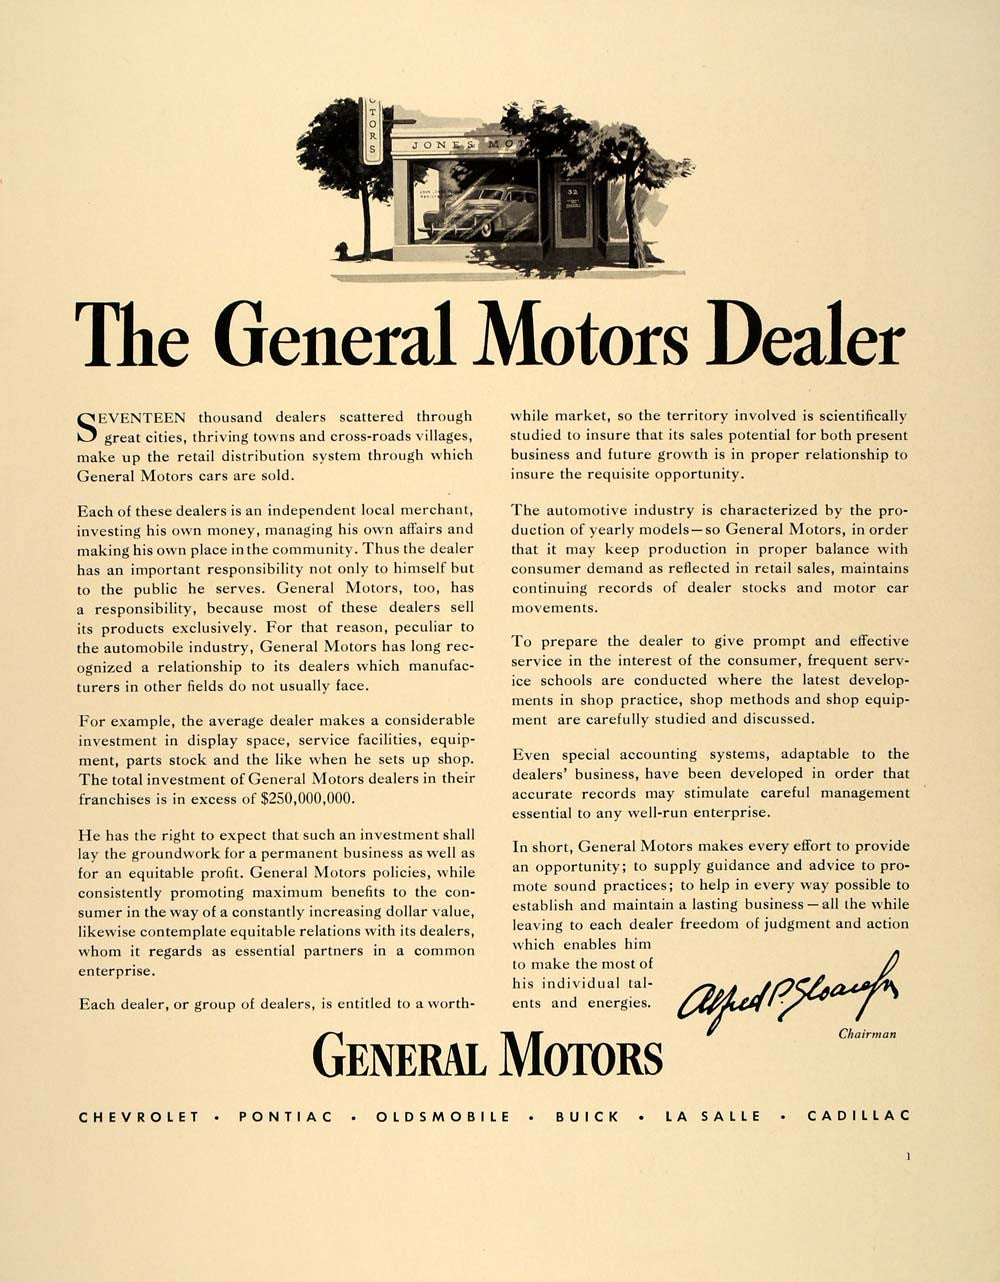 1940 Ad Alfred P. Sloan General Motors Chairman Dealer - ORIGINAL FT6 - Period Paper
